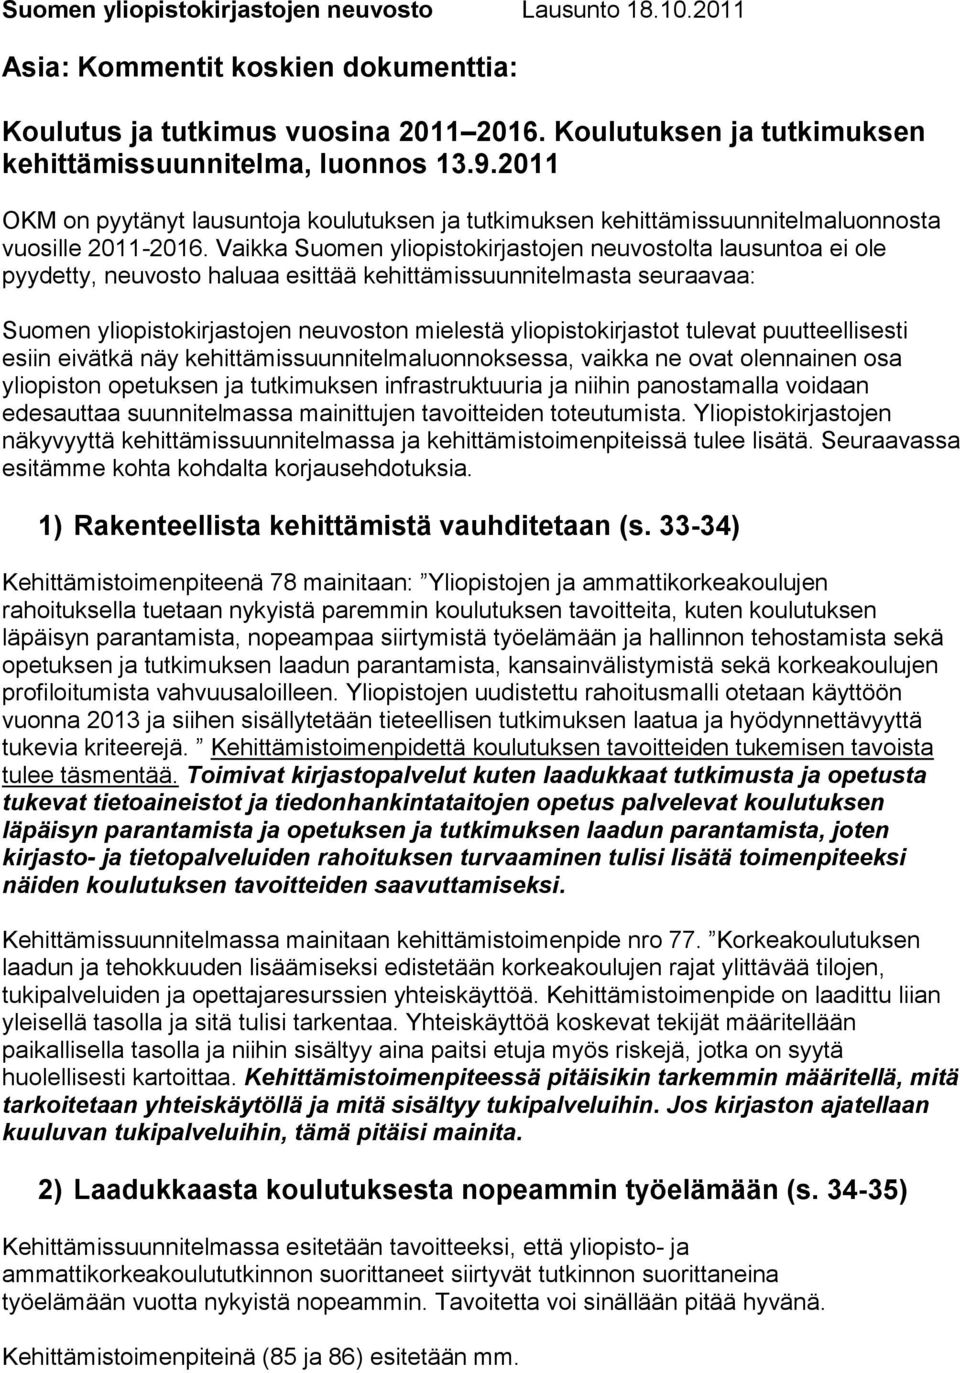 Vaikka Suomen yliopistokirjastojen neuvostolta lausuntoa ei ole pyydetty, neuvosto haluaa esittää kehittämissuunnitelmasta seuraavaa: Suomen yliopistokirjastojen neuvoston mielestä yliopistokirjastot